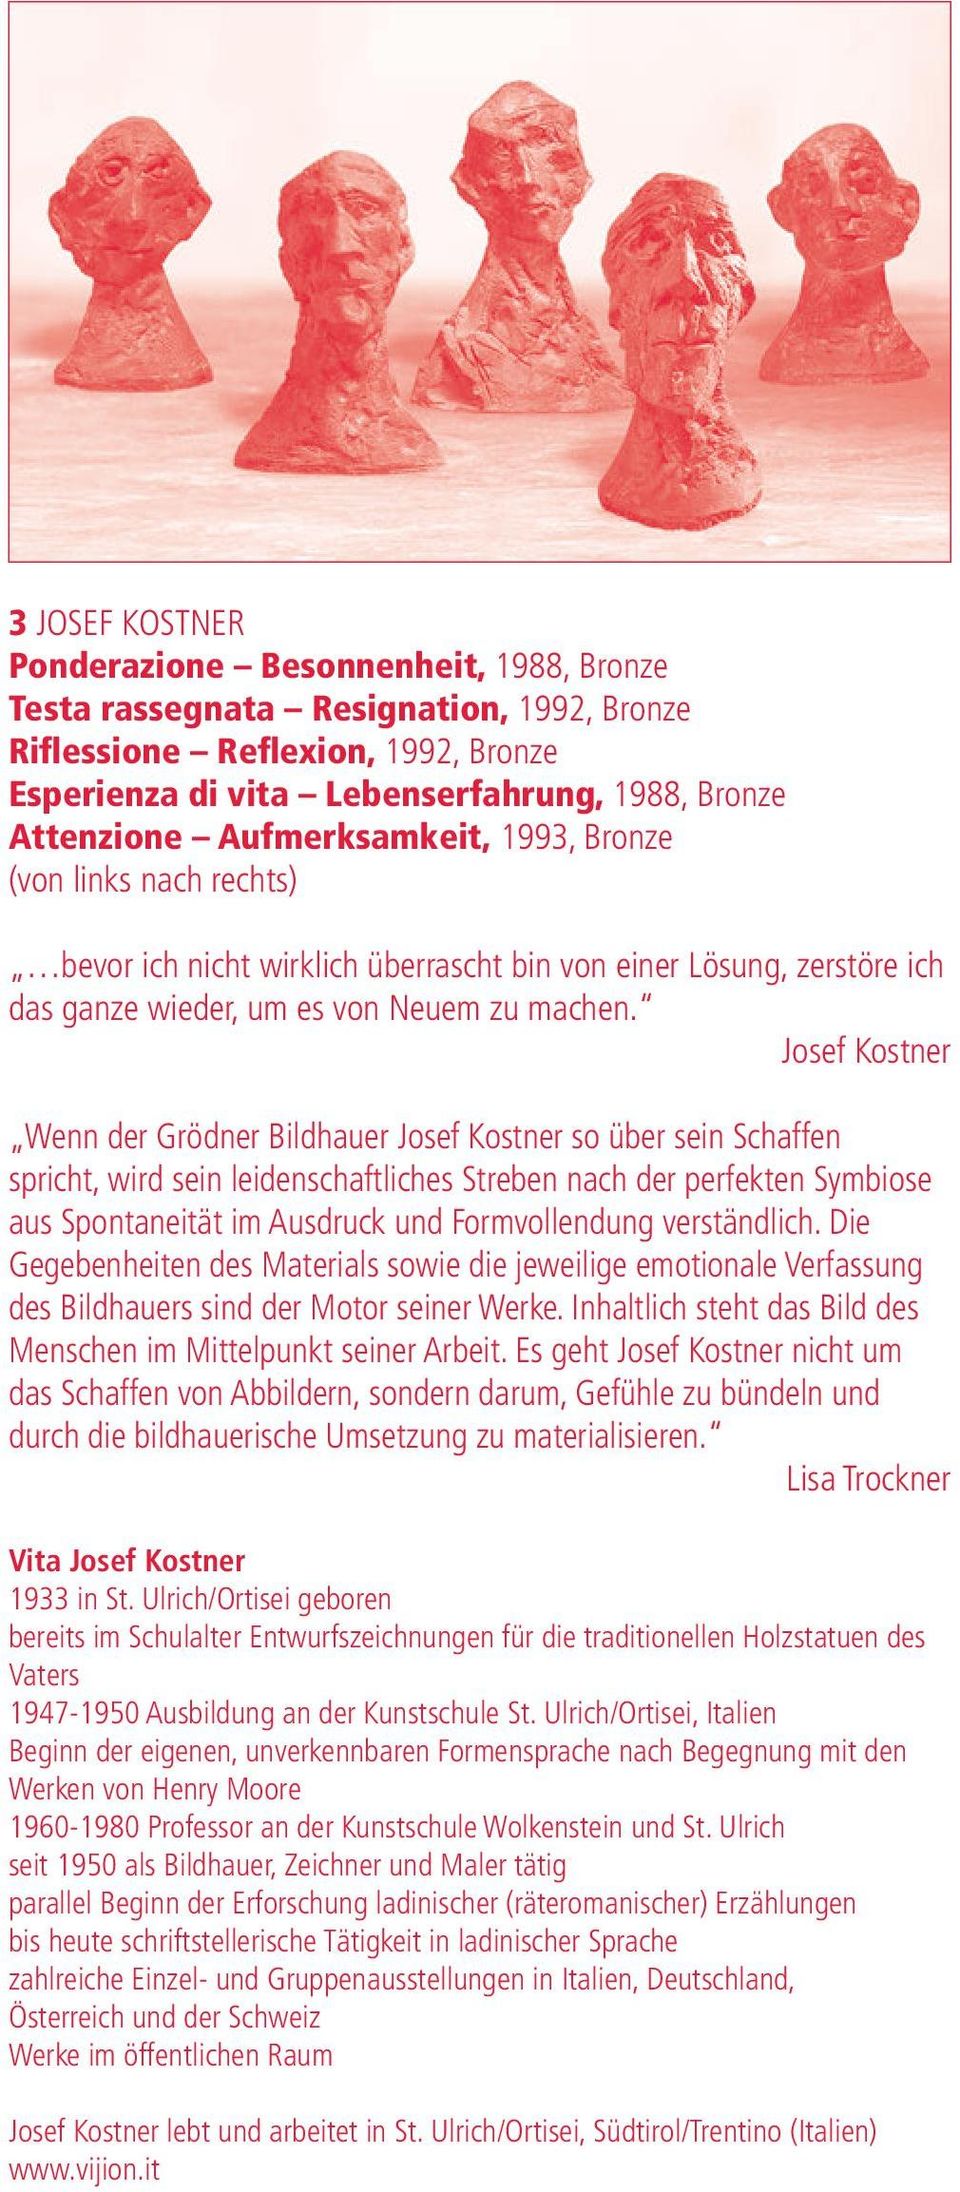 Josef Kostner Wenn der Grödner Bildhauer Josef Kostner so über sein Schaffen spricht, wird sein leidenschaftliches Streben nach der perfekten Symbiose aus Spontaneität im Ausdruck und Formvollendung